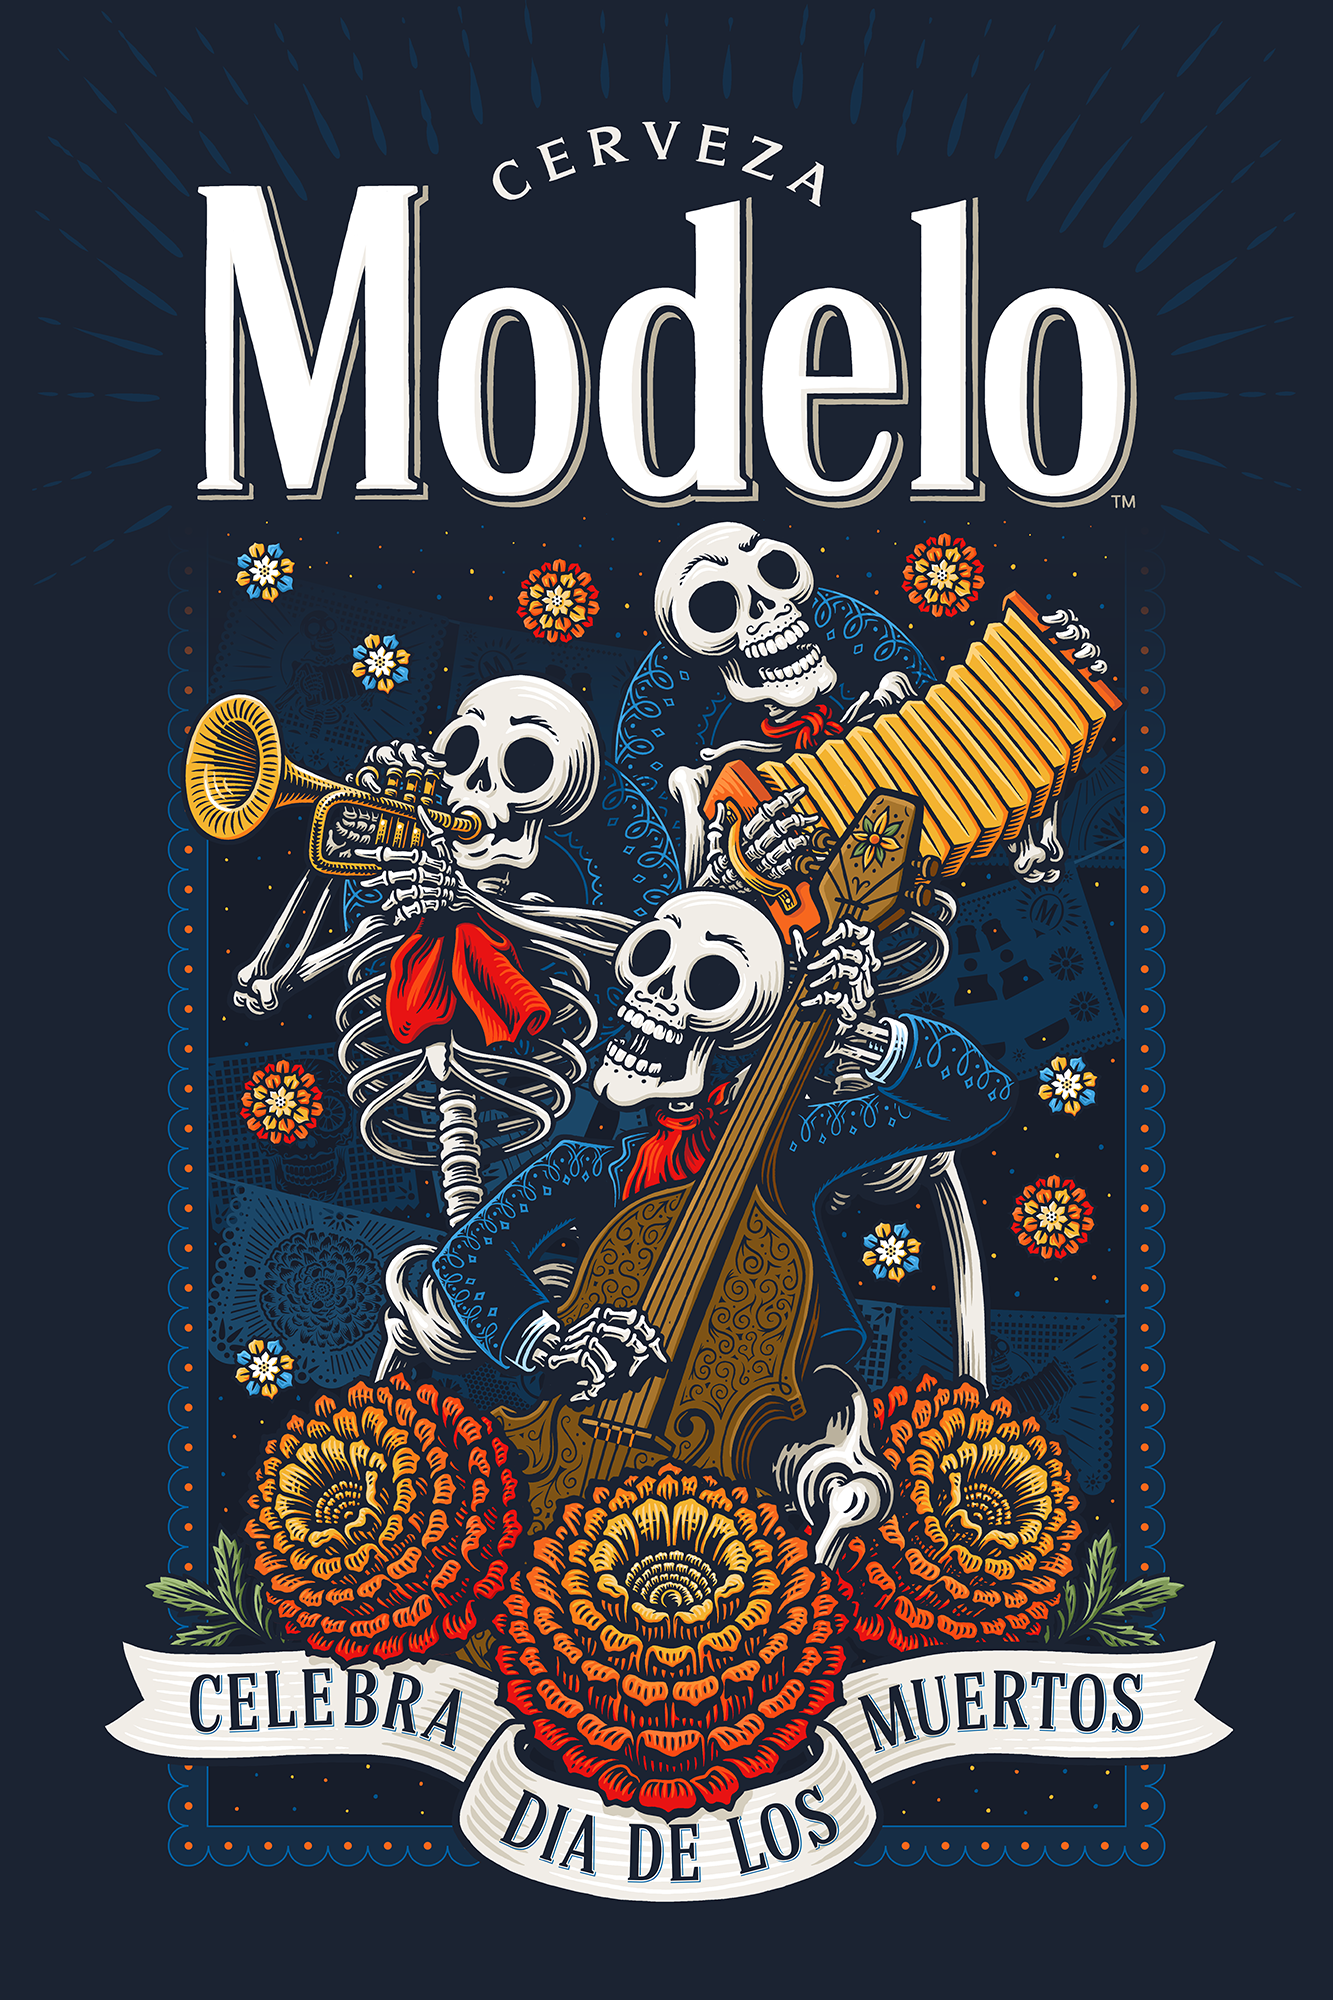 featured image two:Modelo Dia De Los Muertos campaign